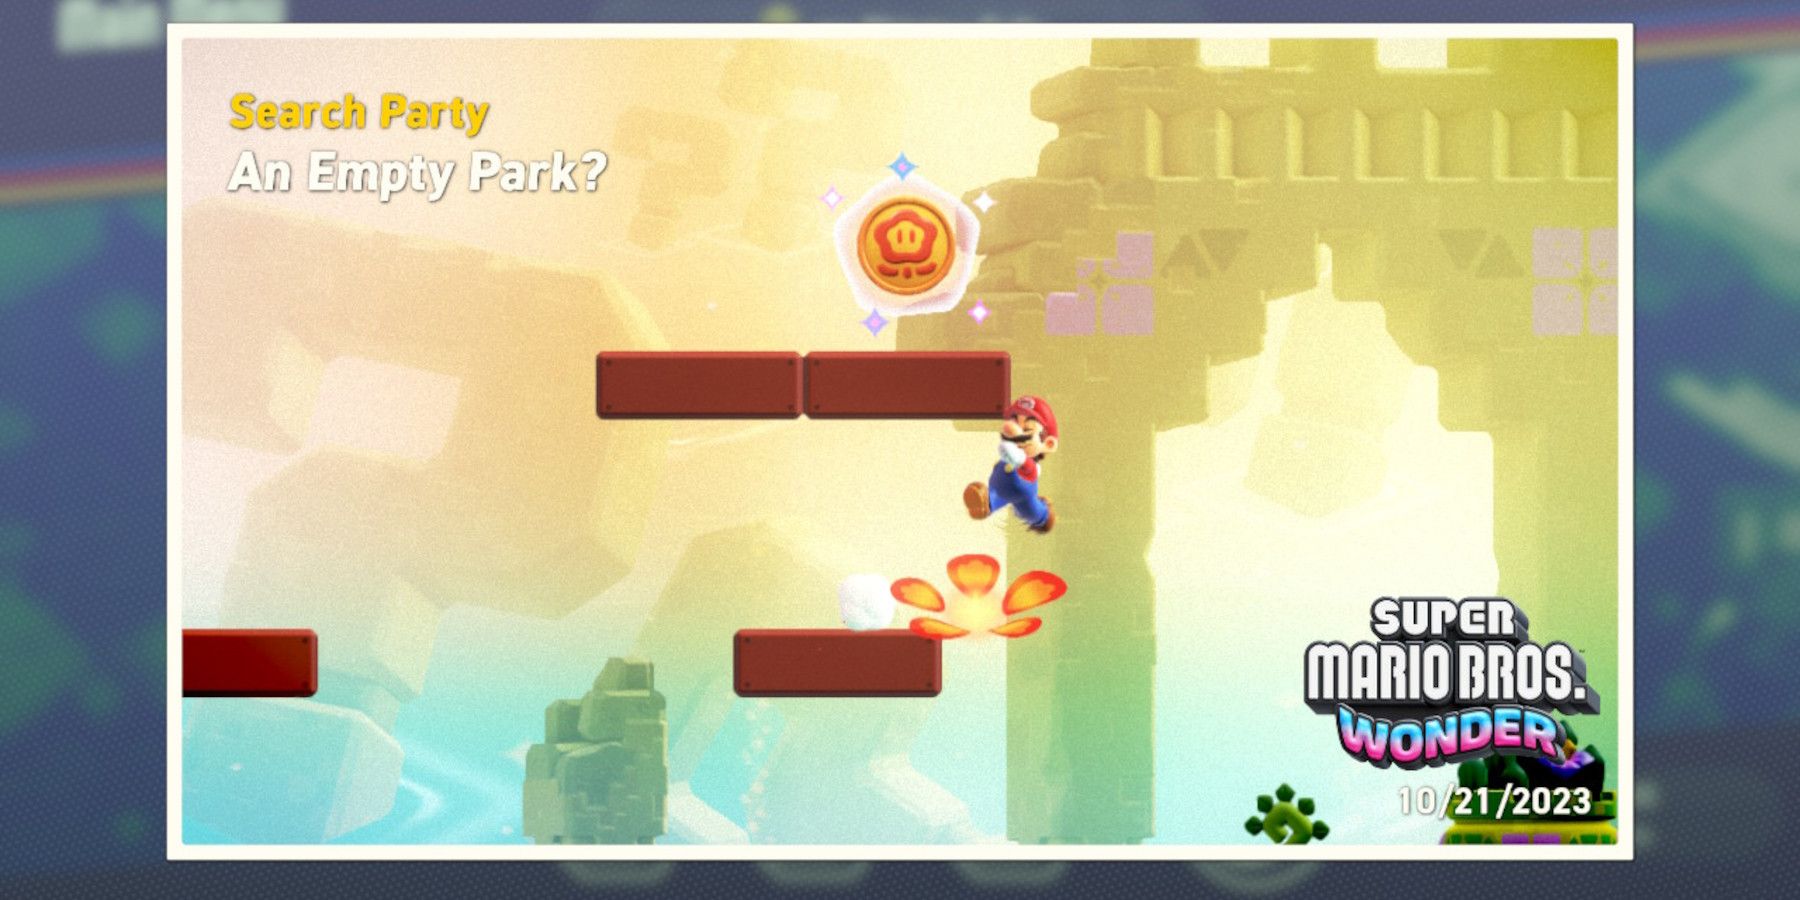 All Search Party Park Token Locations - Super Mario Bros. Wonder